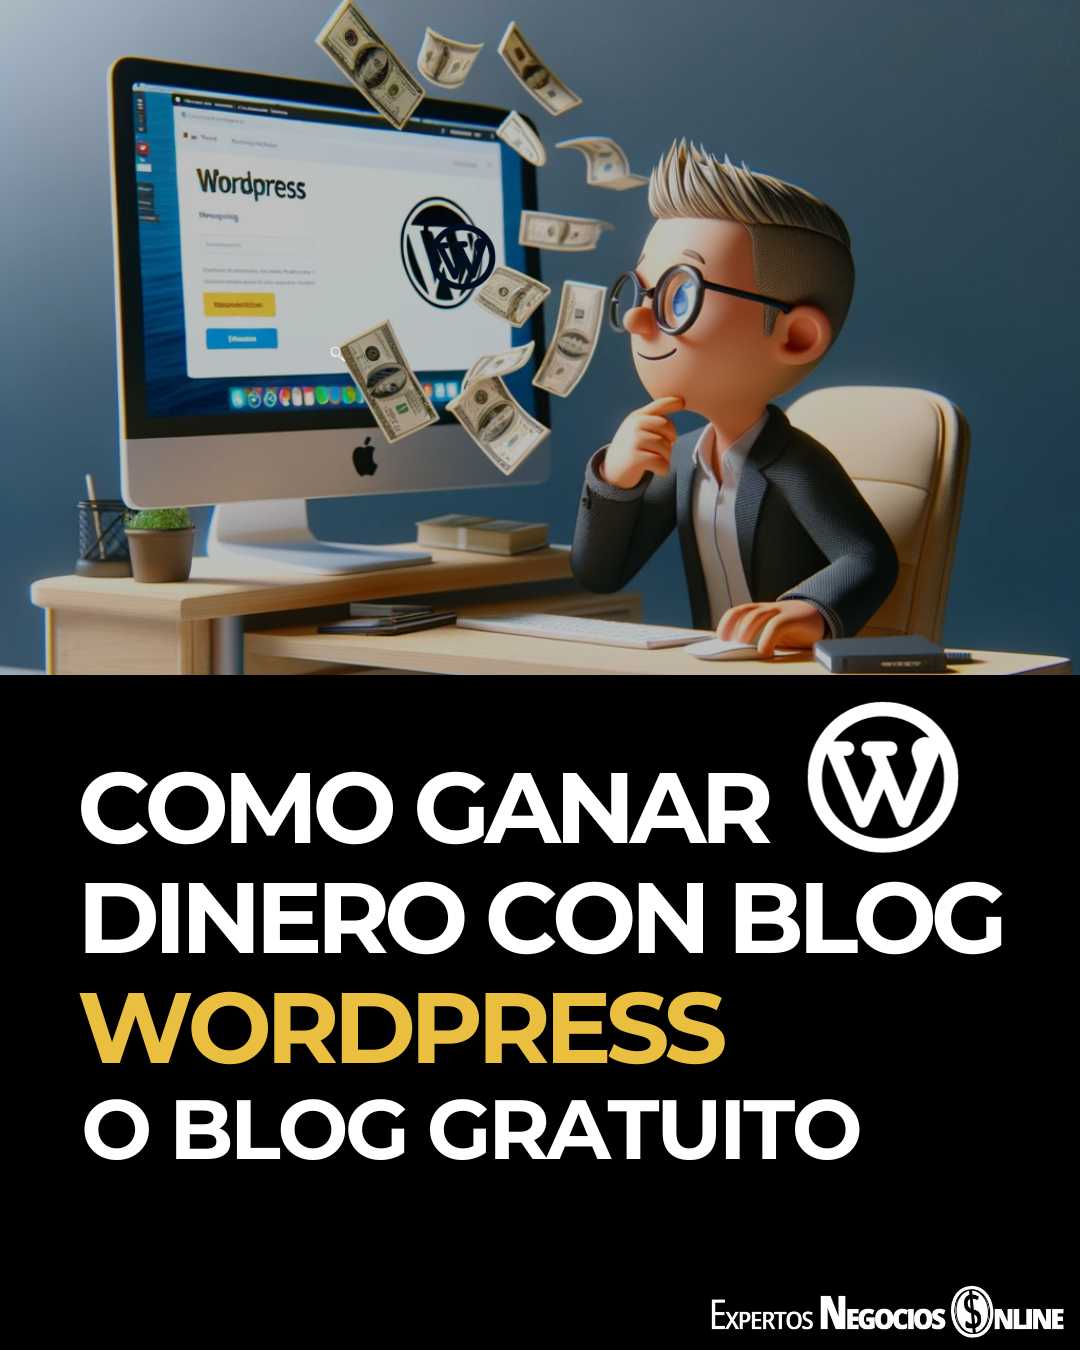 Como ganar dinero con un blog WordPress - Se puede monetizar un blog gratuito